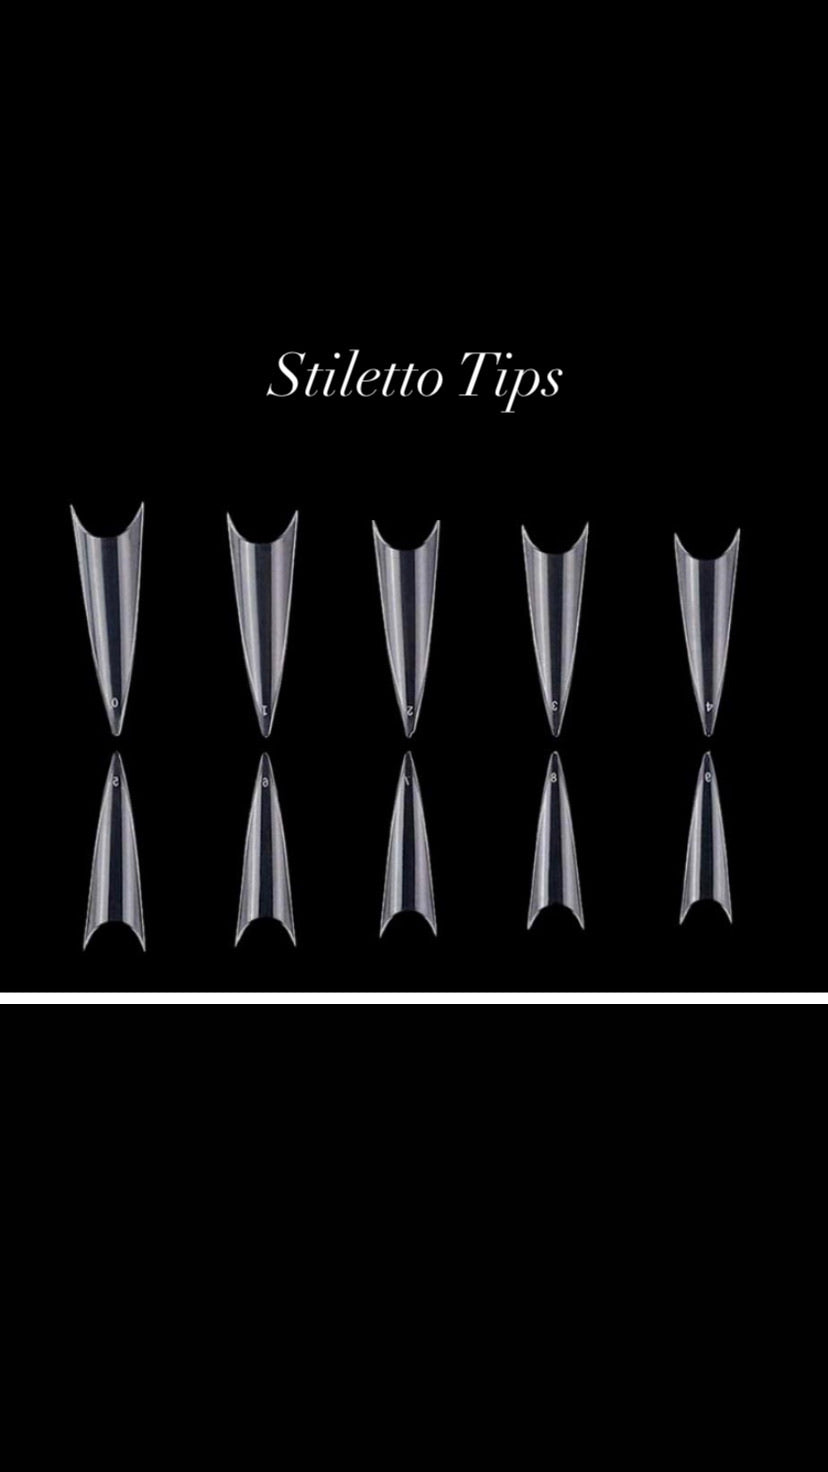 NEW* Stiletto Nail Tips x 250 Box XL Clear Half Well